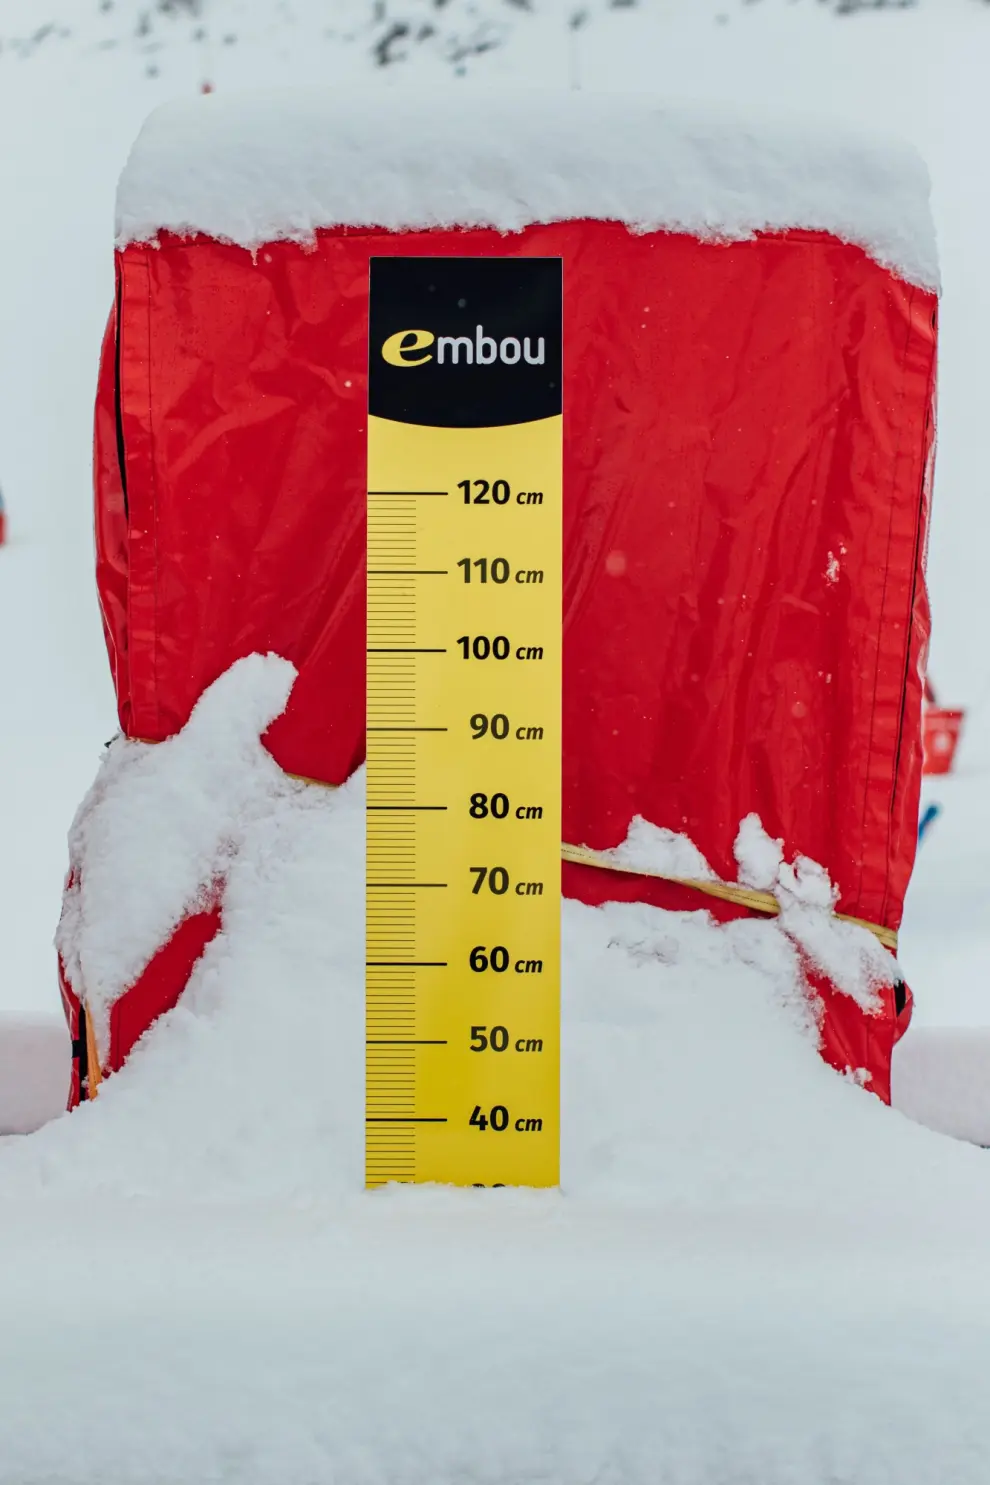 La Aemet ha activado para este martes un aviso por nevadas con acumulaciones de hasta 15 cm.